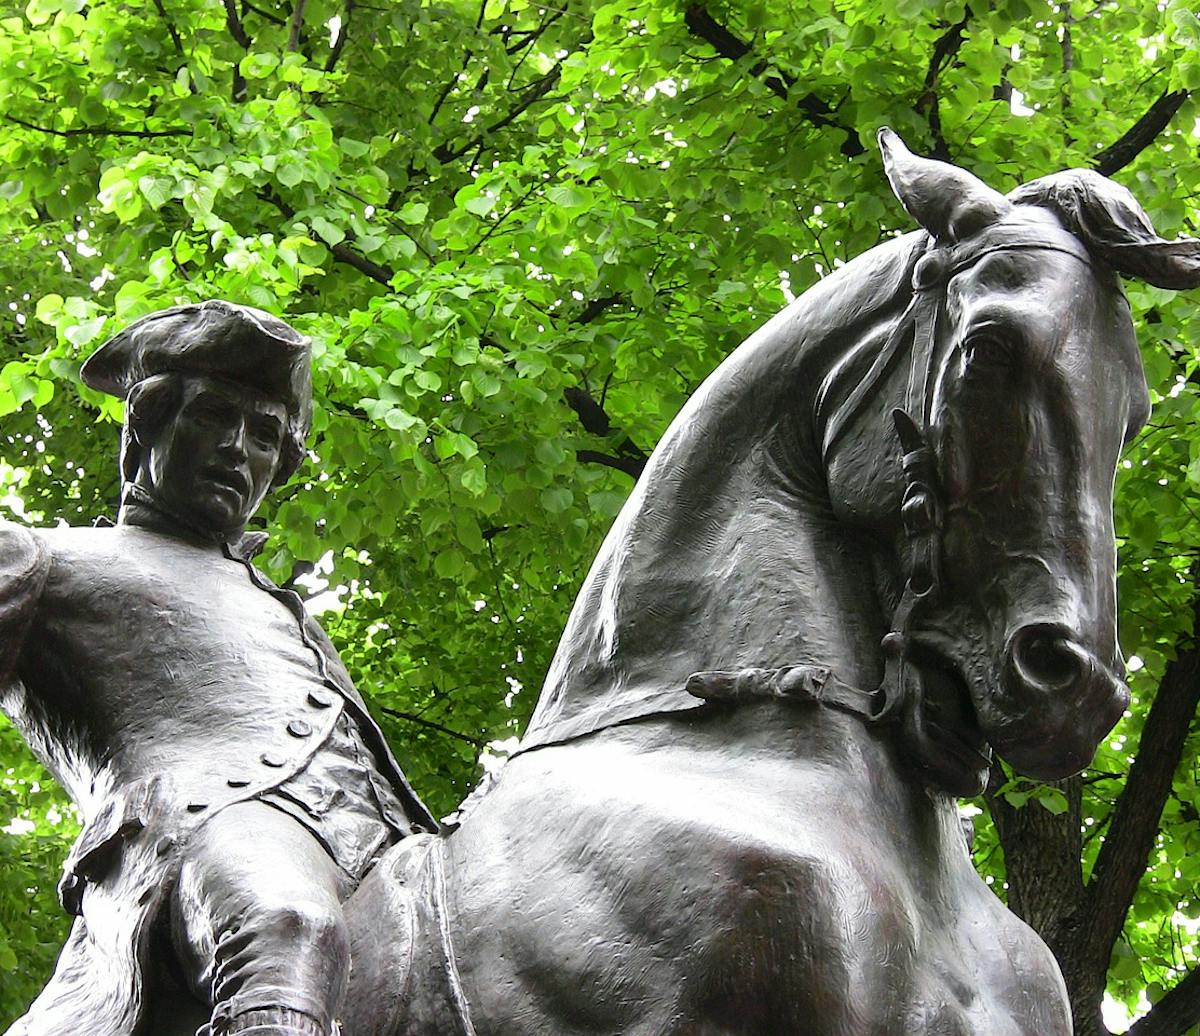 Paul Revere statue